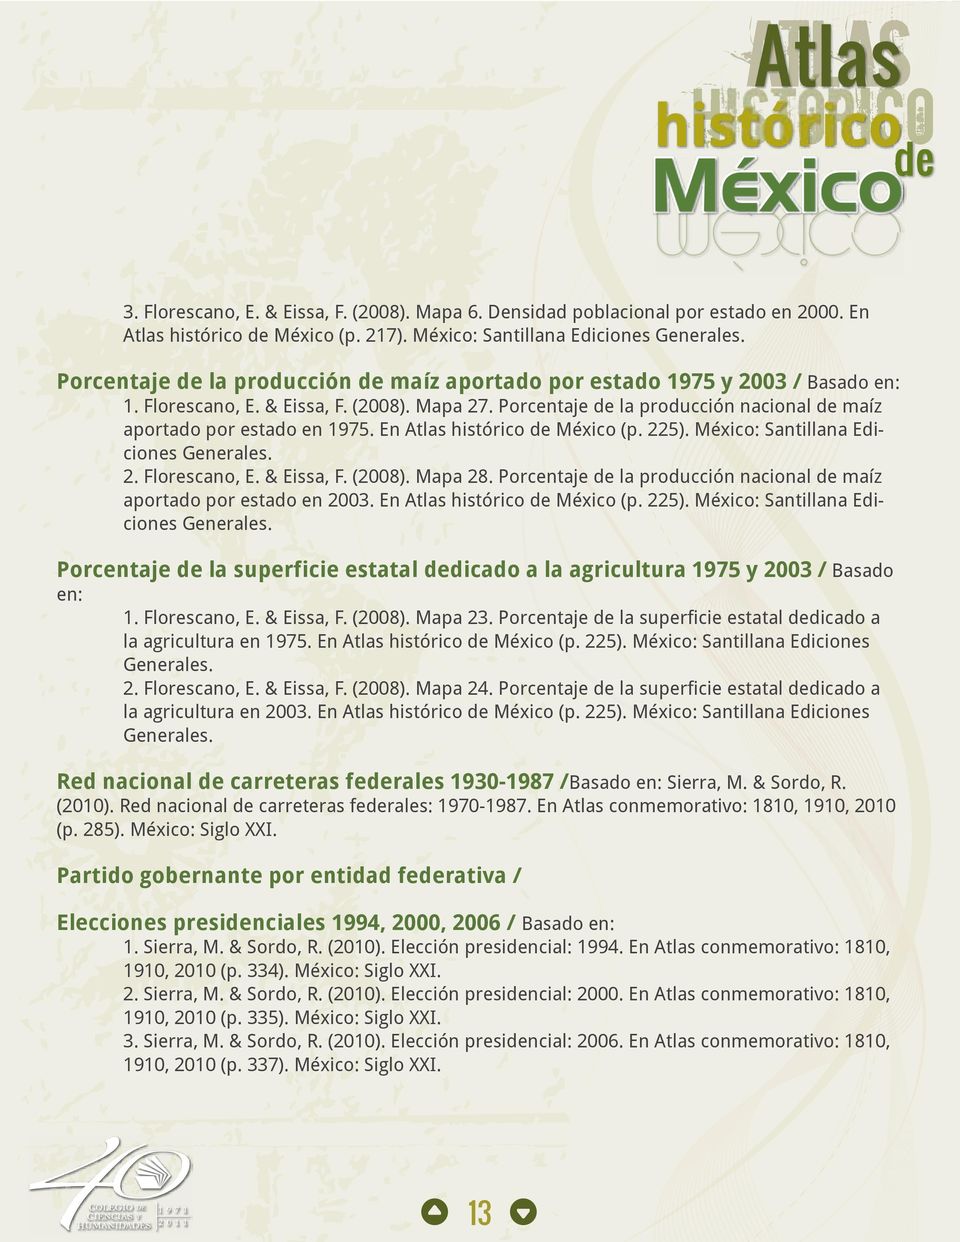 Porcentaje de la producción nacional de maíz aportado por estado en 1975. En Atlas histórico de México (p. 225). México: Santillana Ediciones Generales. 2. Florescano, E. & Eissa, F. (2008). Mapa 28.